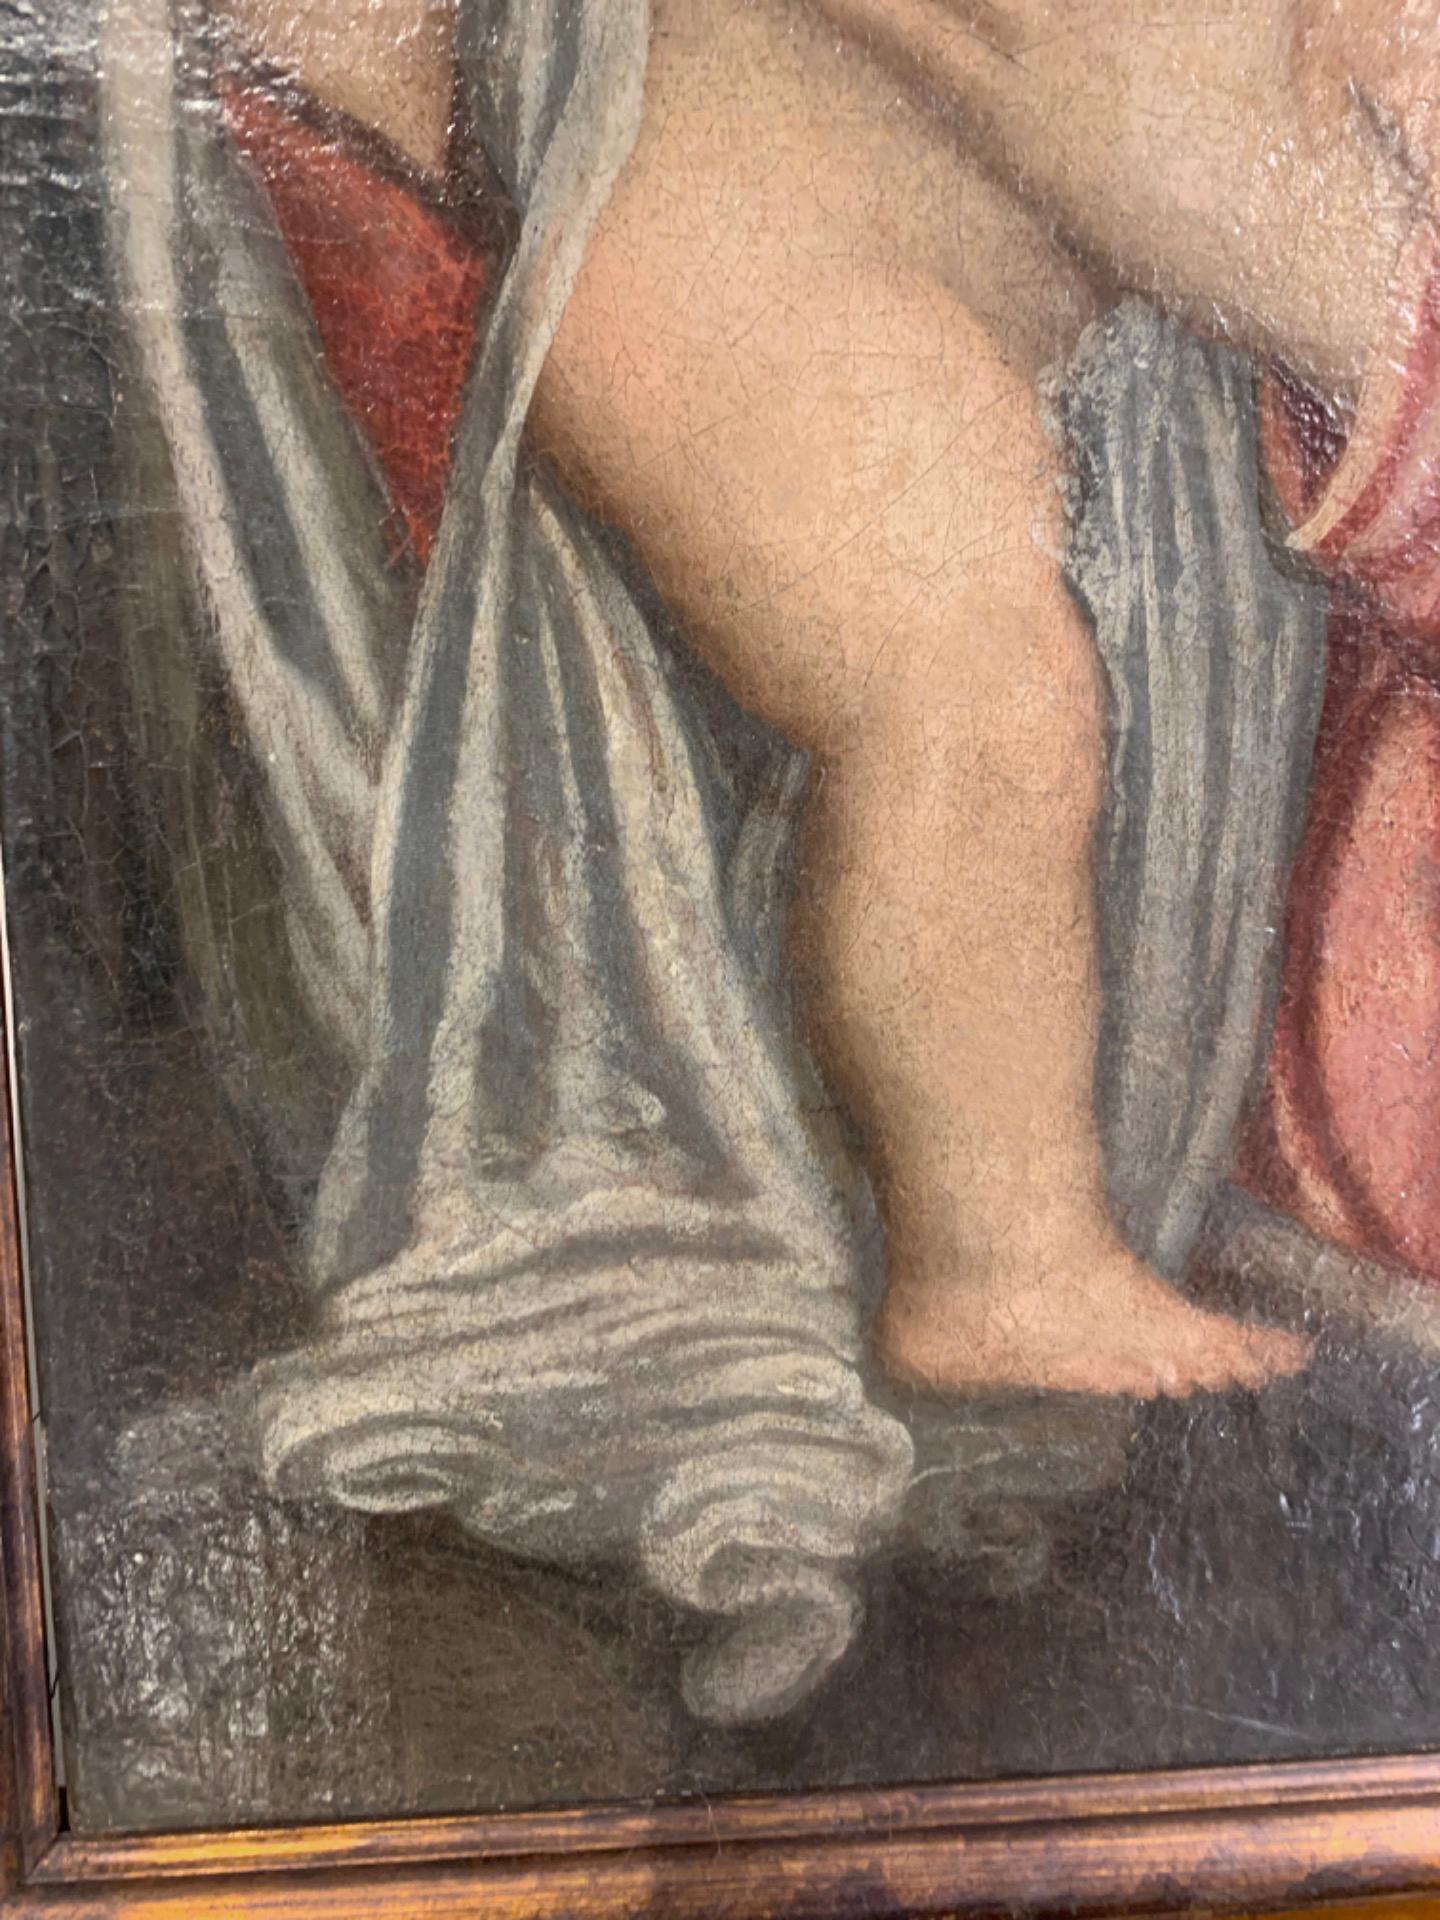 Belle huile sur toile datant de l'école piémontaise du début du 18e siècle. L'œuvre représente la Vierge avec l'Enfant Jésus dans ses bras et, à côté, l'enfant Saint Jean. Sur le bandeau de la robe de la Vierge est écrit 